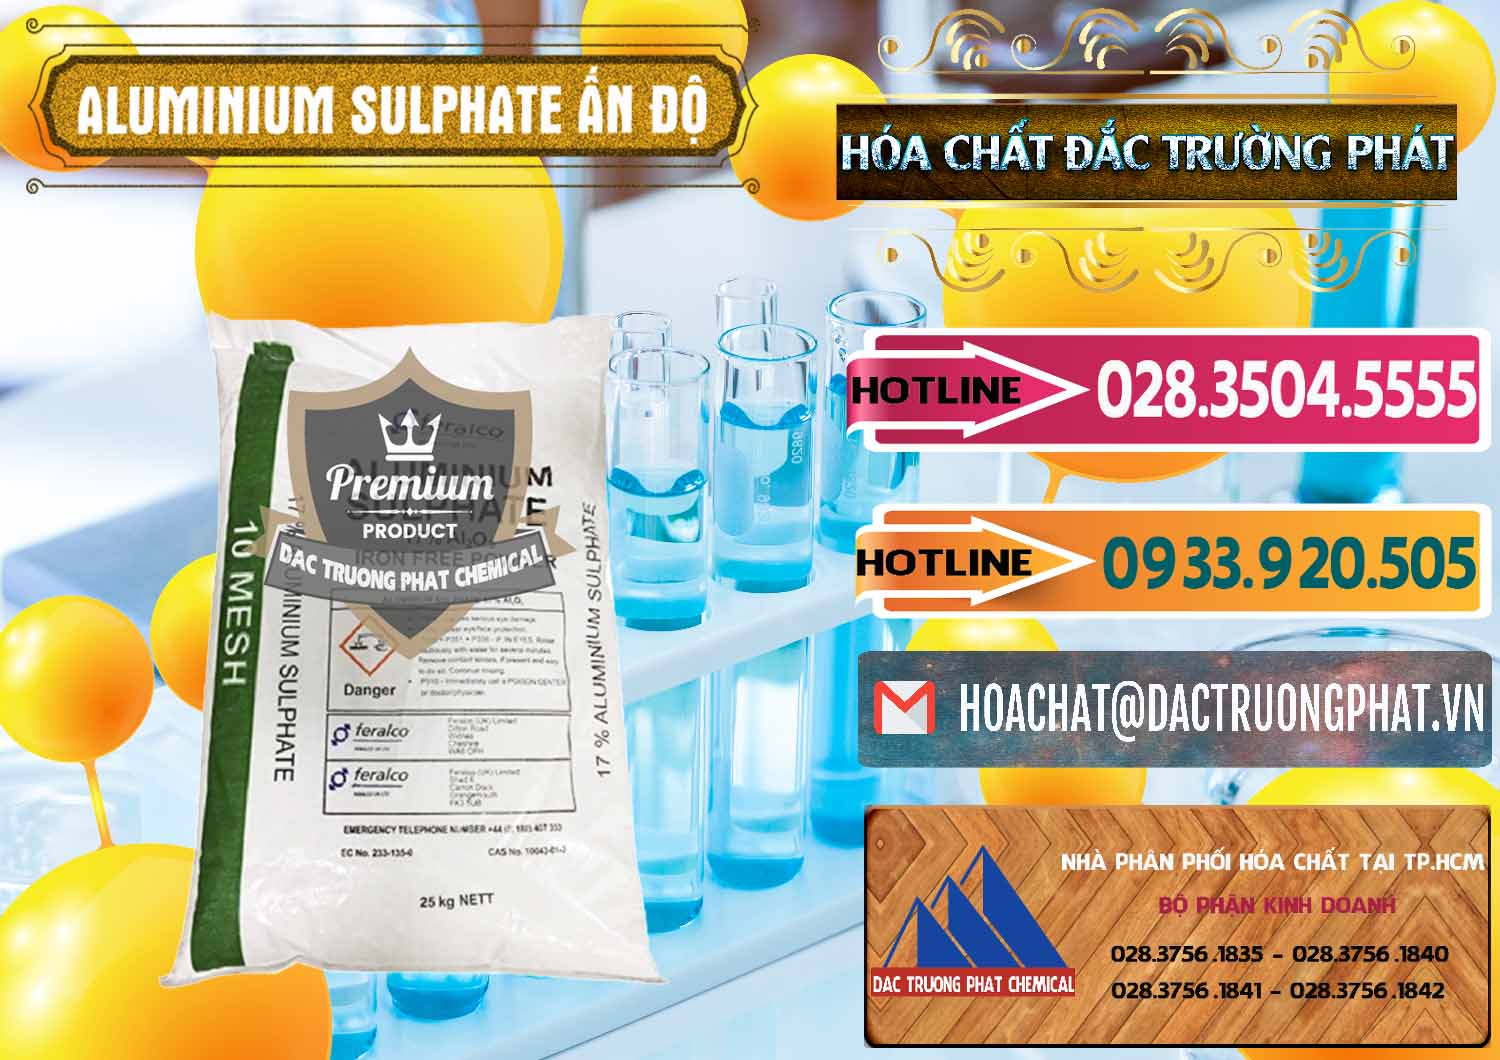 Công ty bán & phân phối Phèn Nhôm - Al2(SO4)3 17% Ấn Độ India - 0463 - Nơi chuyên phân phối - cung ứng hóa chất tại TP.HCM - dactruongphat.vn